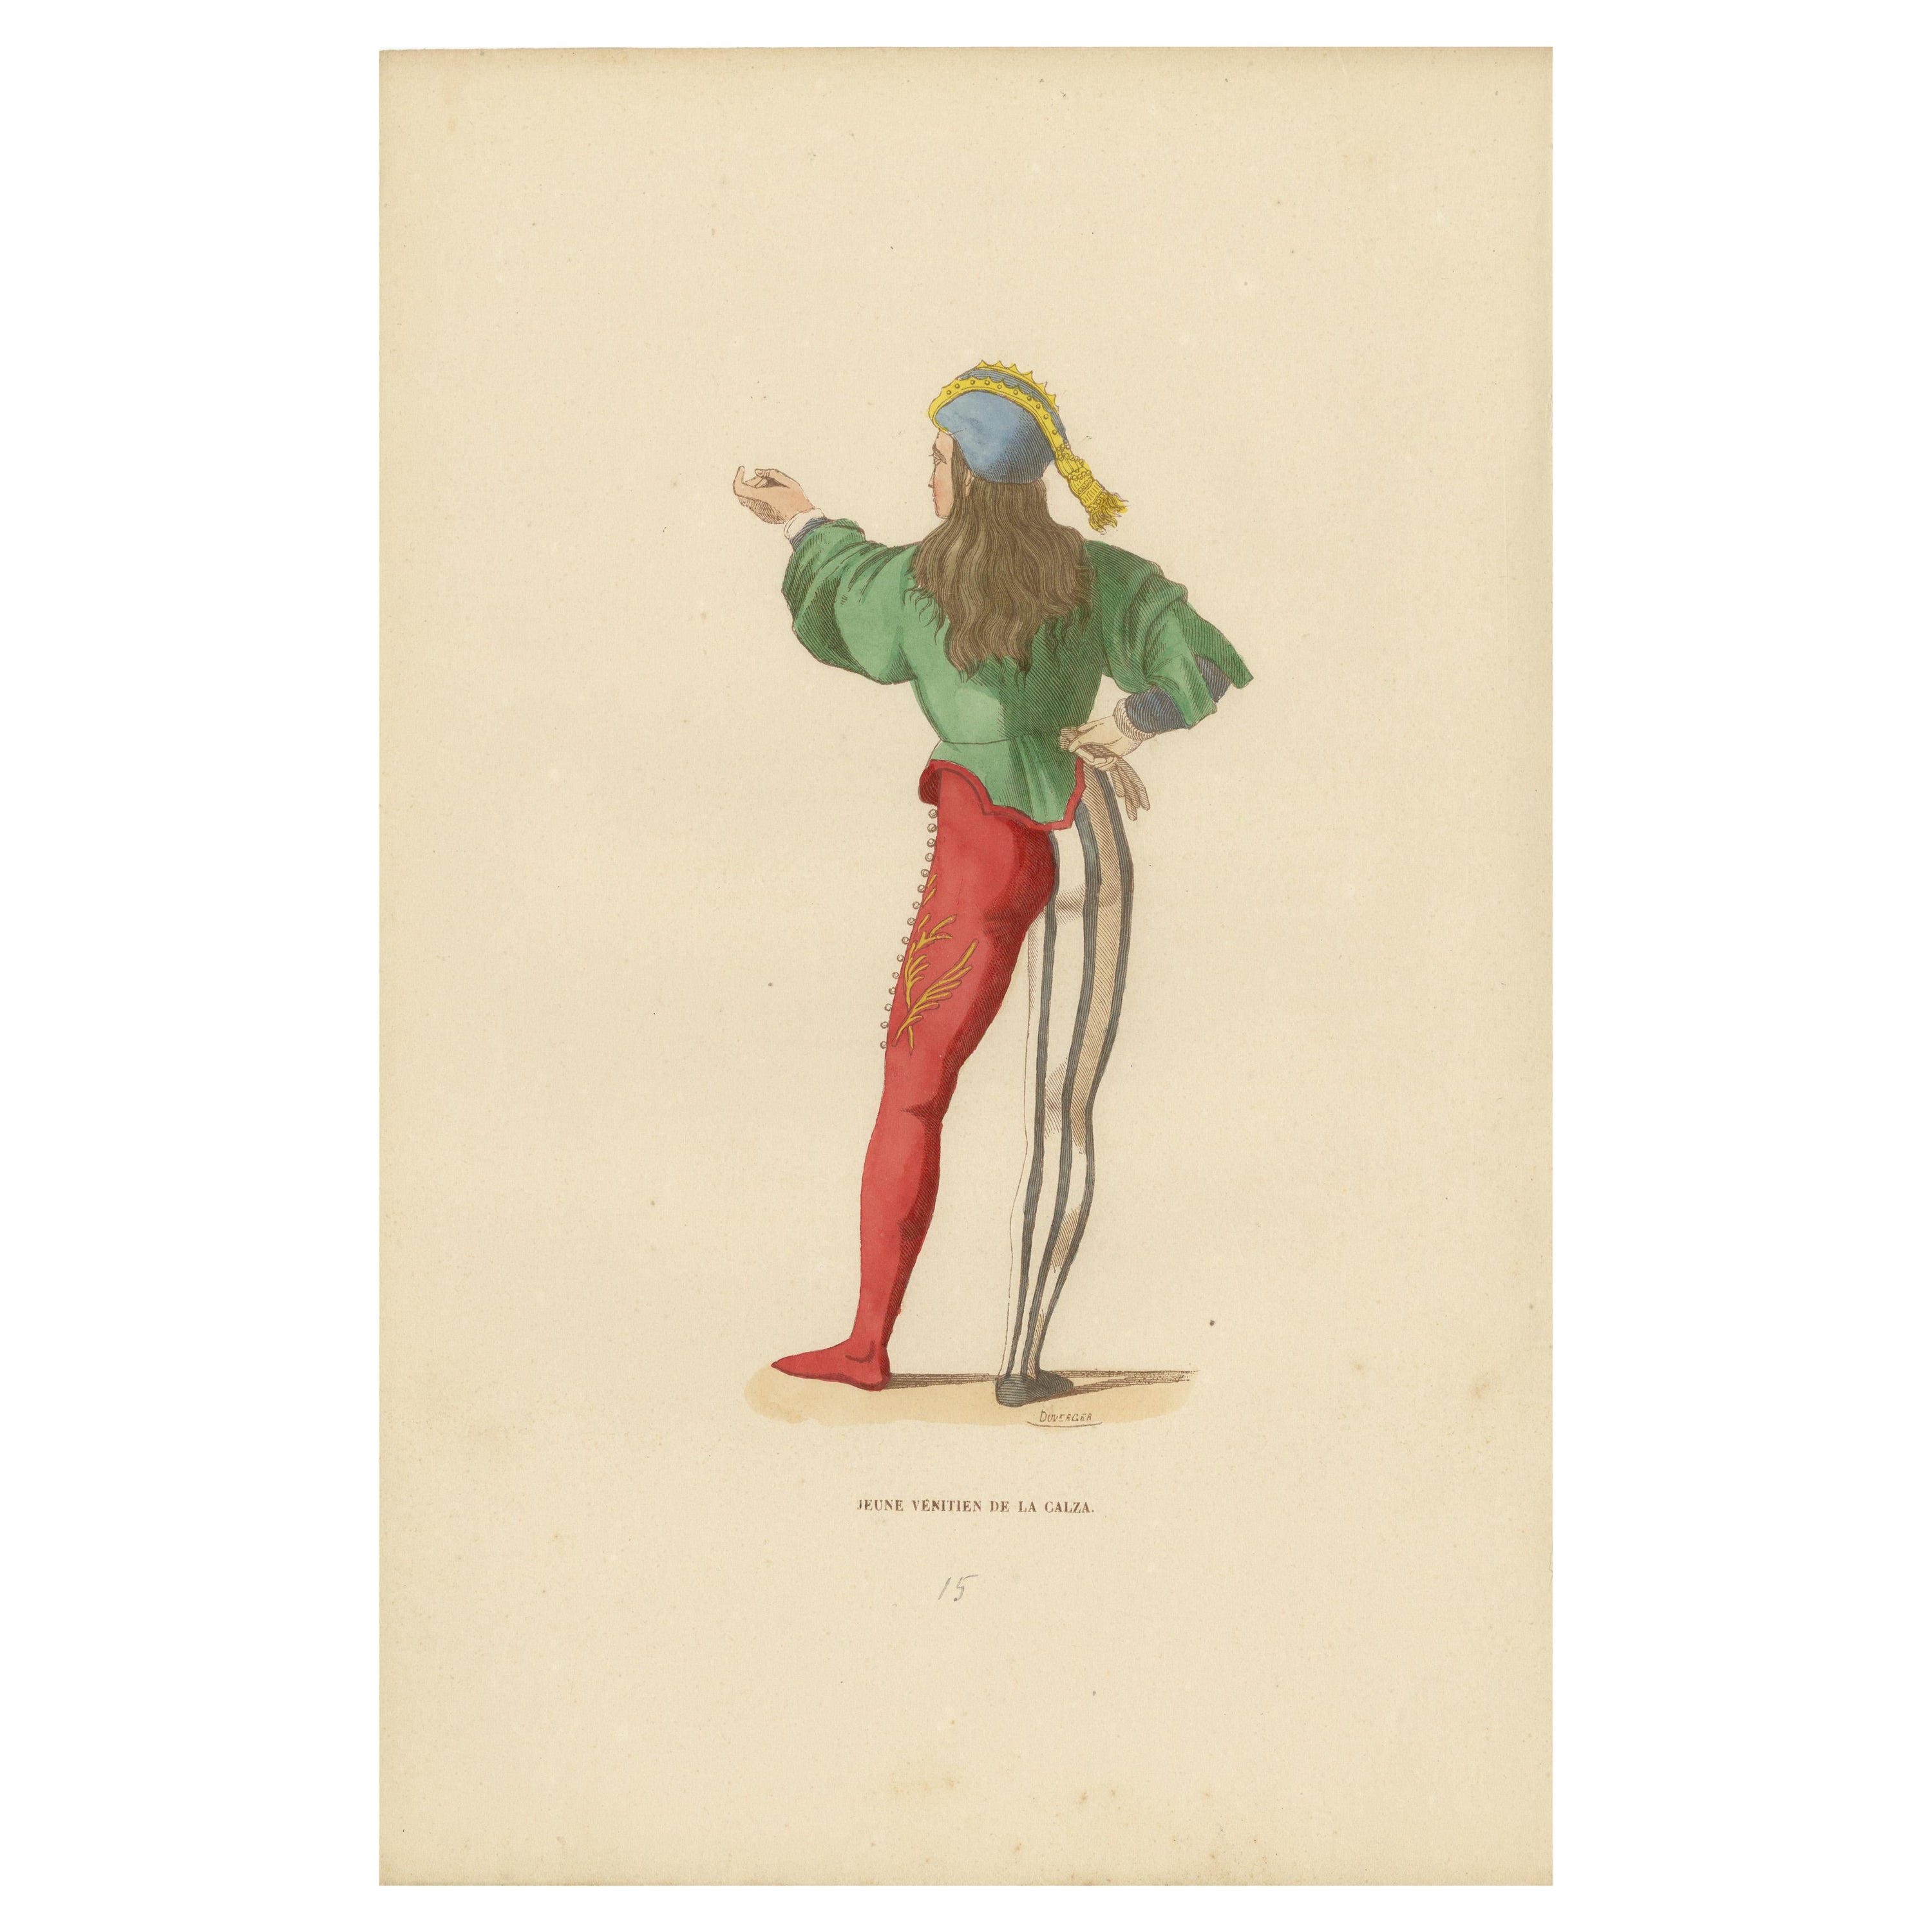 Youthful Extravagance: Ein Mitglied des venezianischen Calza, 1847